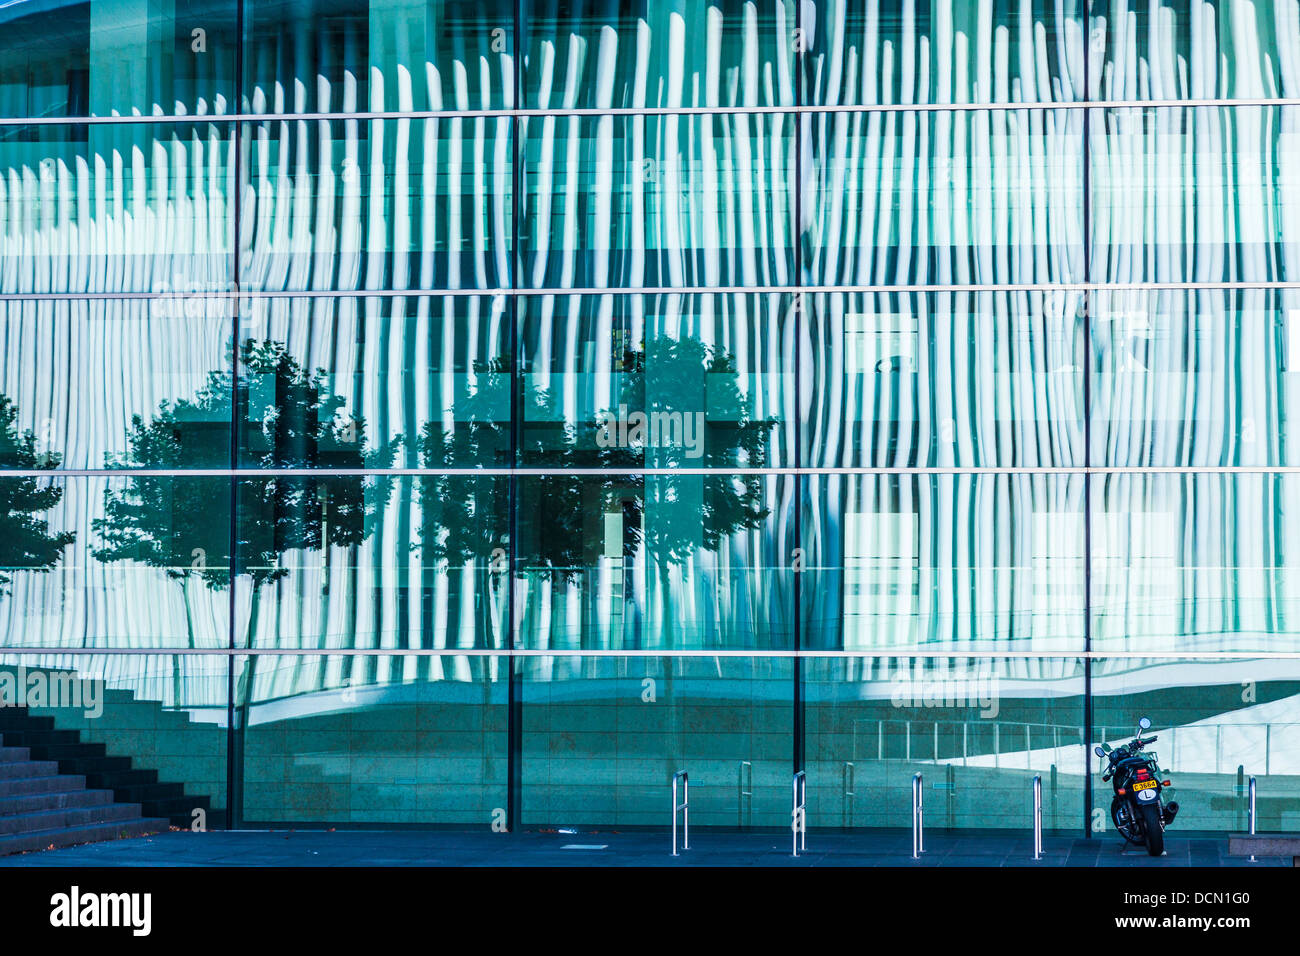 Les colonnes en acier blanc de la salle de concert Philharmonie reflète dans la conférence européenne et centre de congrès de la ville de Luxembourg. Banque D'Images